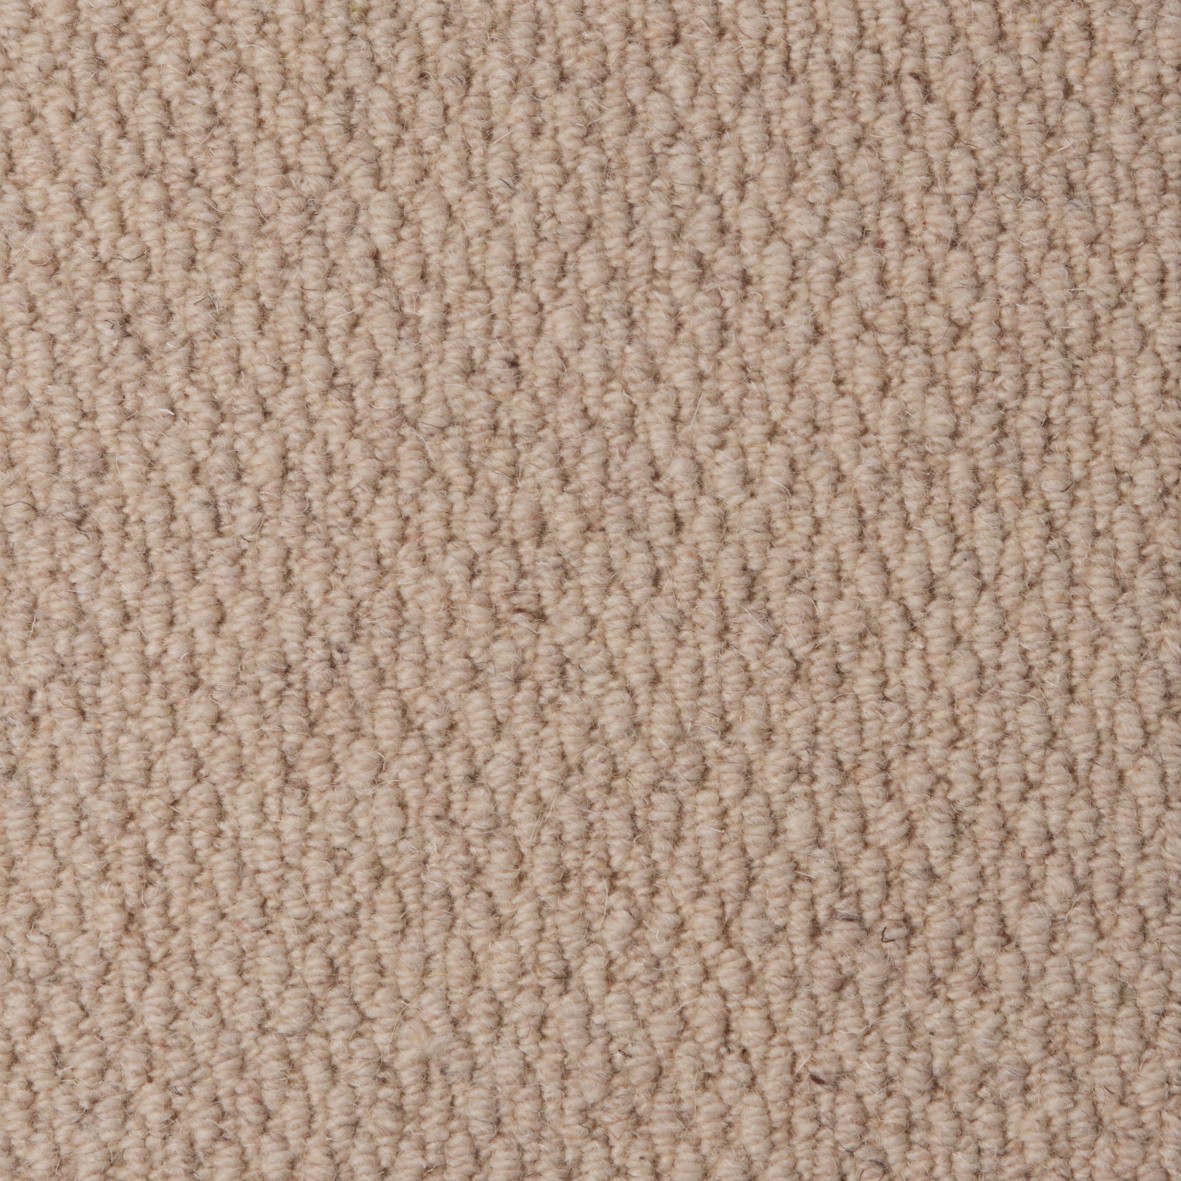 Rolling Hills Pure Wool Loop Carpet - Snowdrop